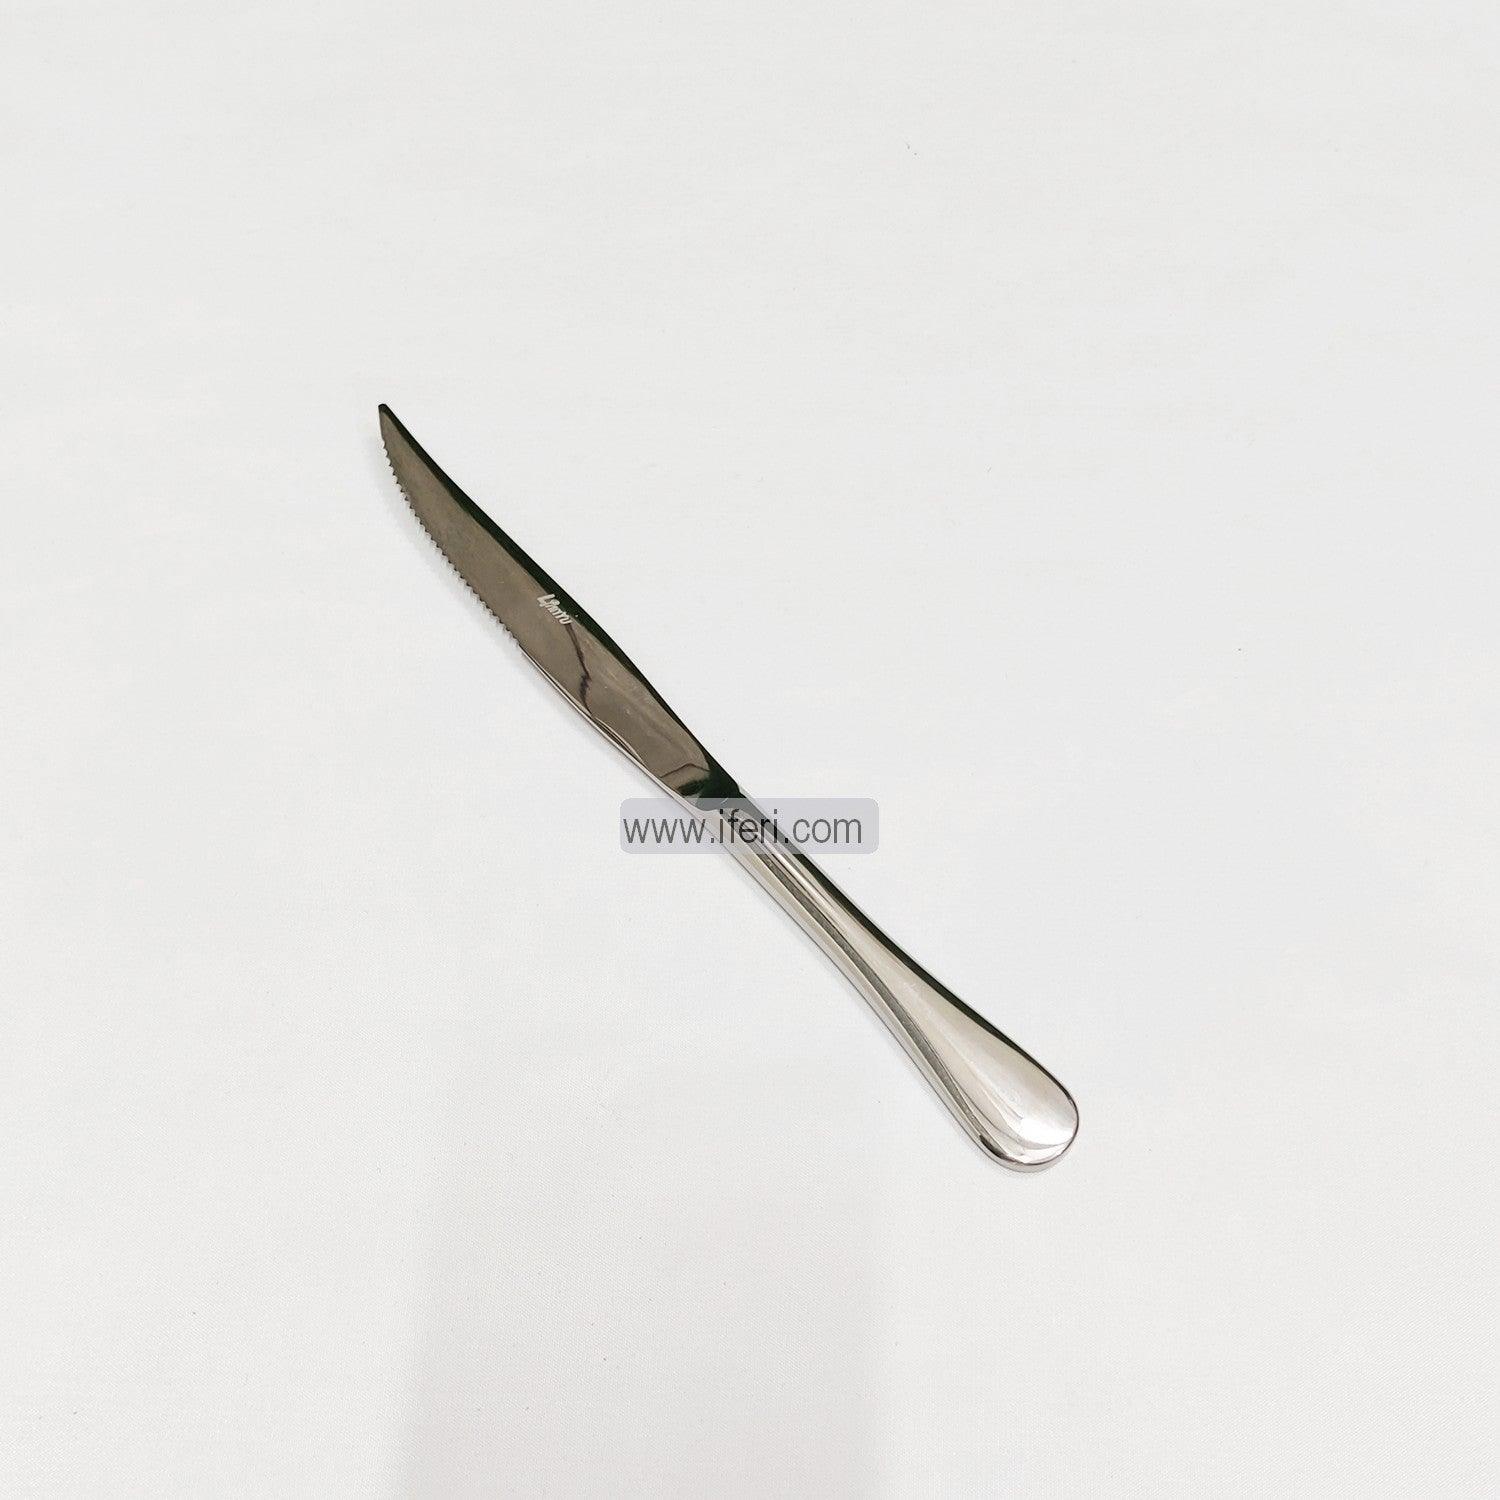 9 inch 6 pcs Metal Dinner Knife Set EB9128 Price in Bangladesh - iferi.com